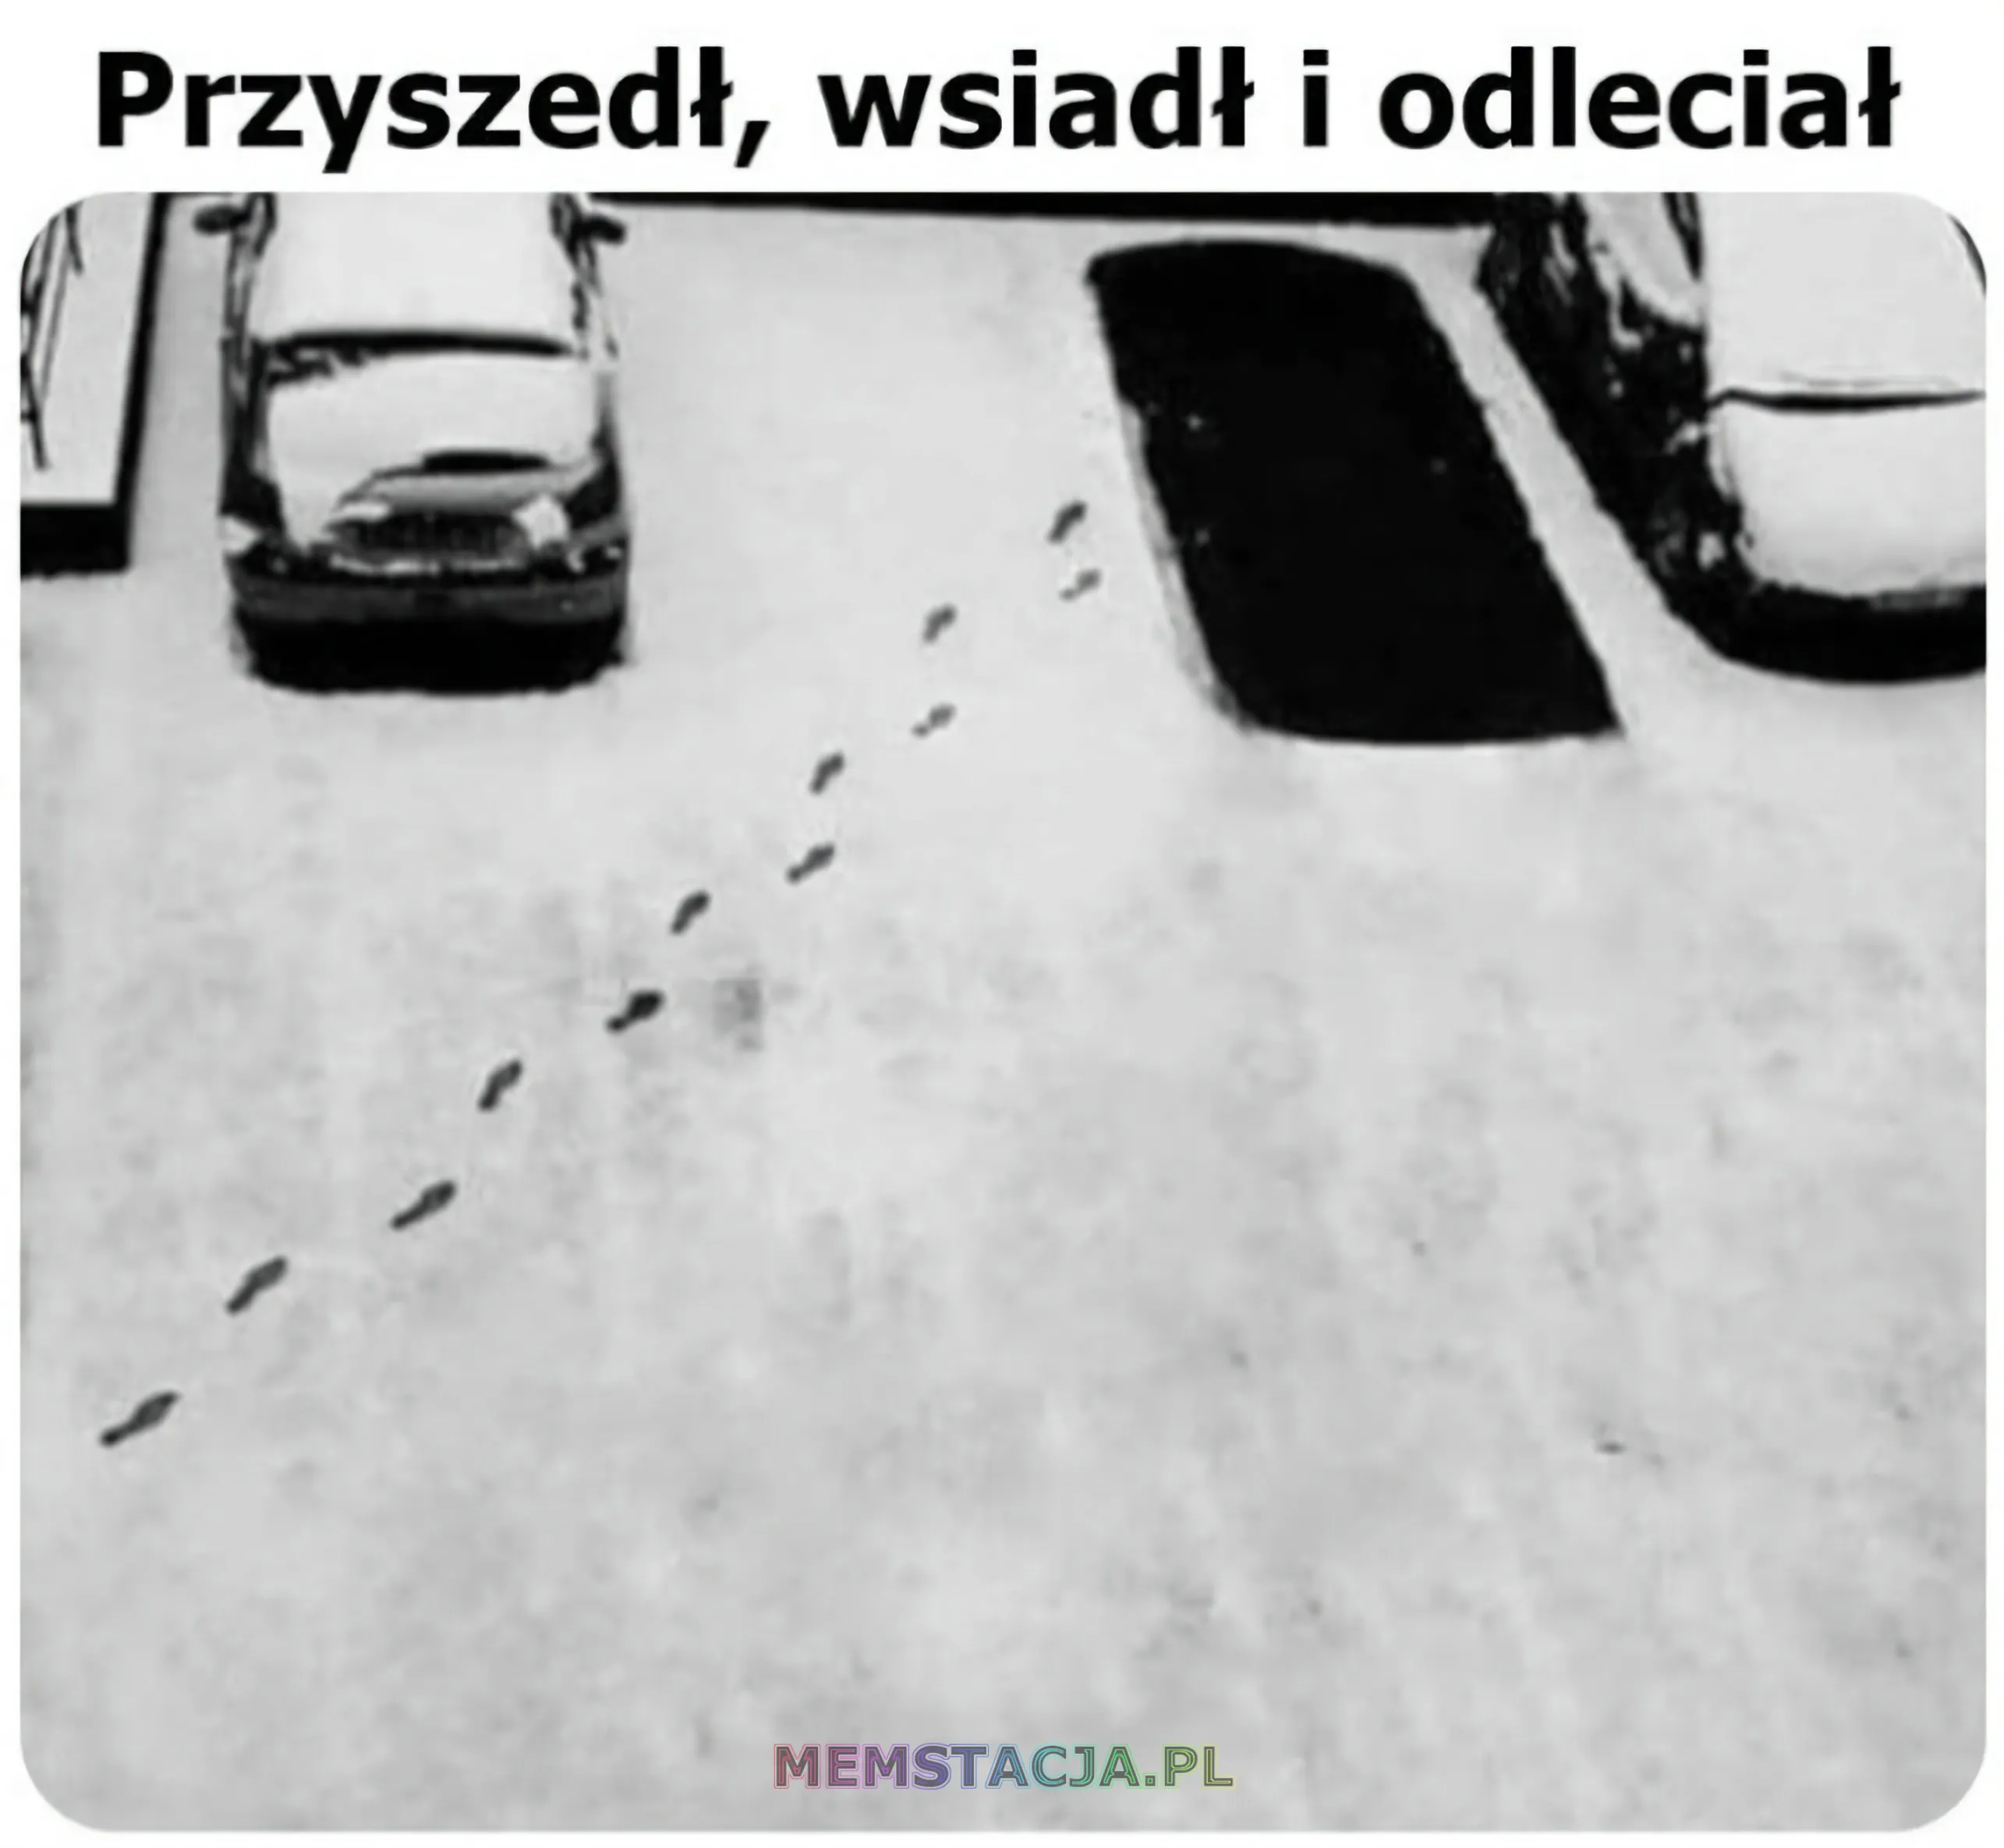 Mem przedstawiający ślady stóp na śniegu i ślad po stojącym aucie bez śladu opon na śniegu: 'Przyszedł, wsiadł i odleciał'.